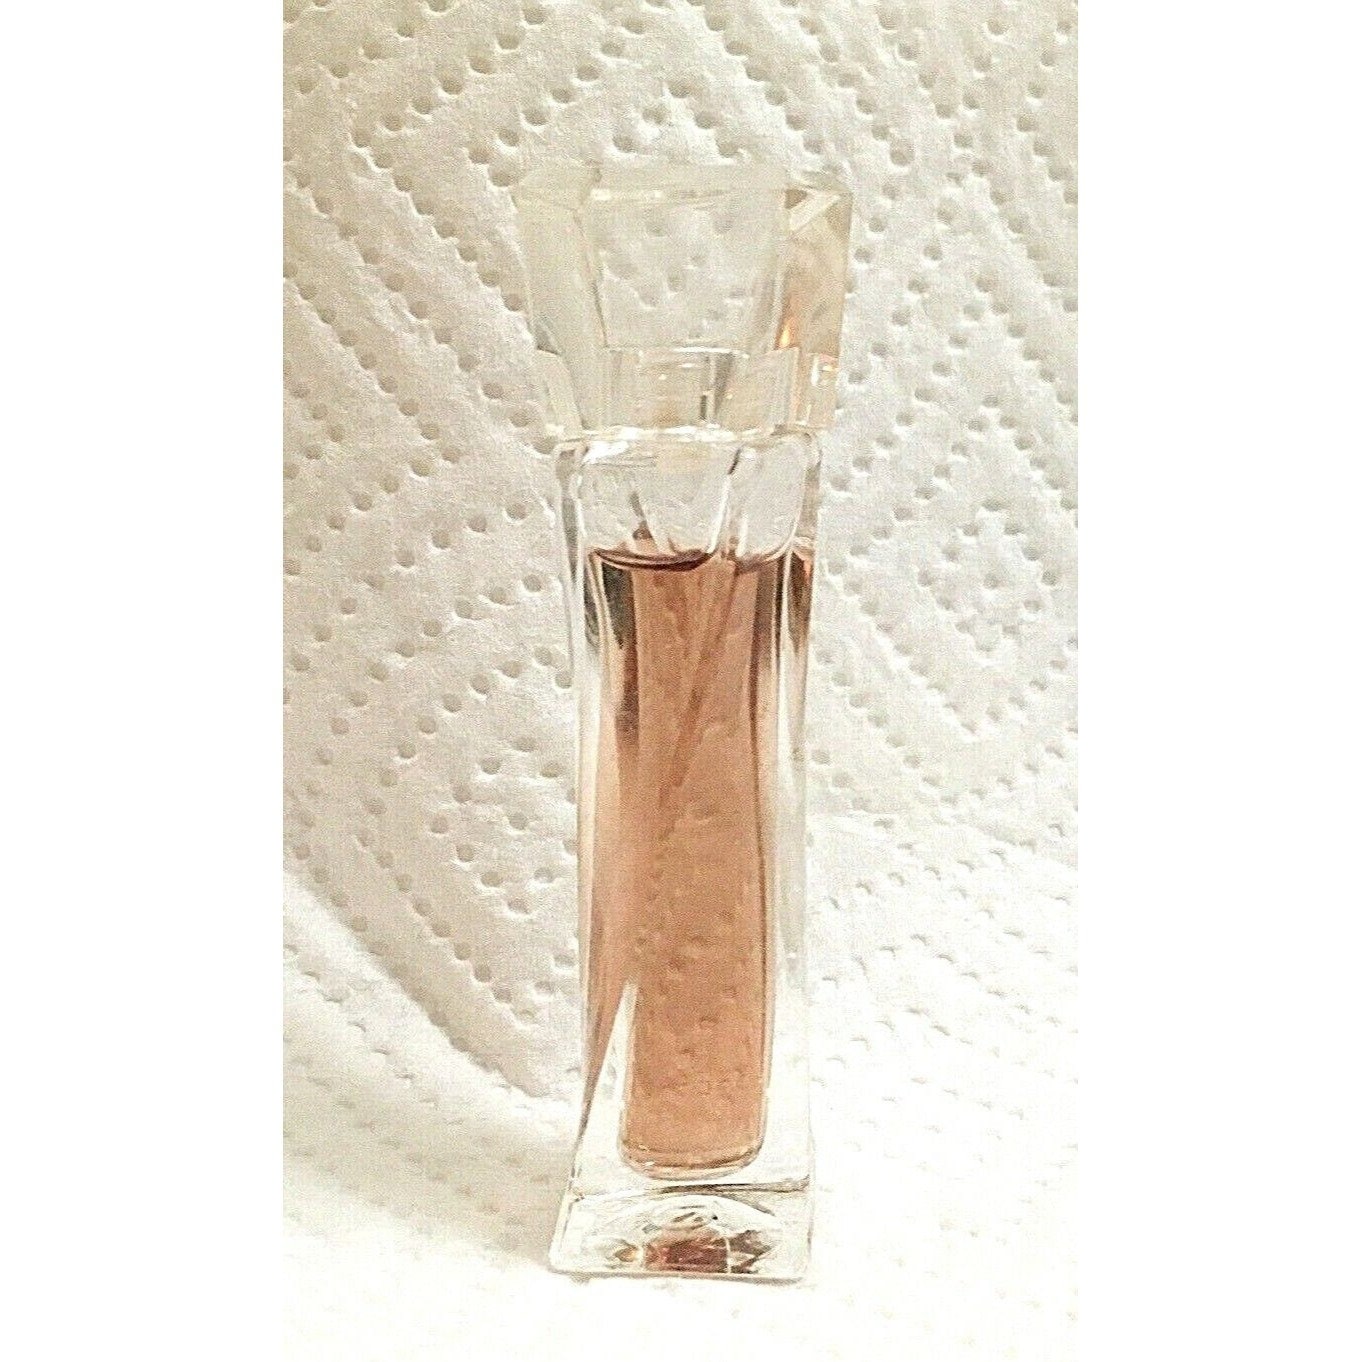 Hypnose Eau Parfume Miniature Bottle .16 Oz Full Etsy Norway